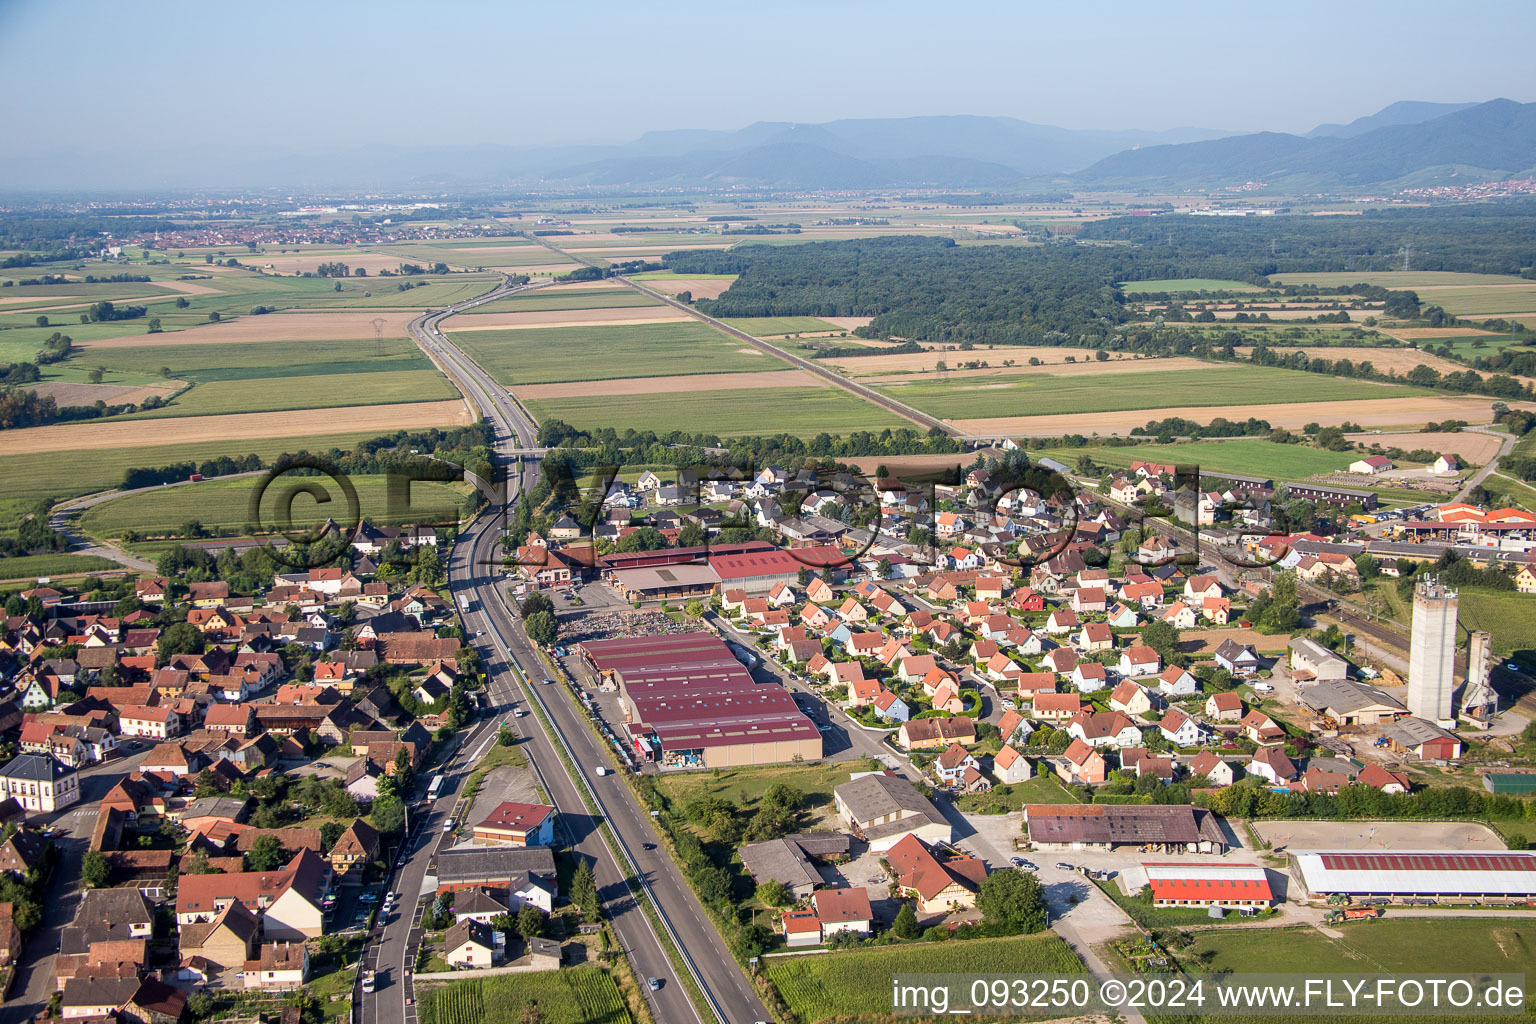 Luftbild von Dorf - Ansicht am Rande von landwirtschaftlichen Feldern und Nutzflächen in Kogenheim in Grand Est im Bundesland Bas-Rhin, Frankreich